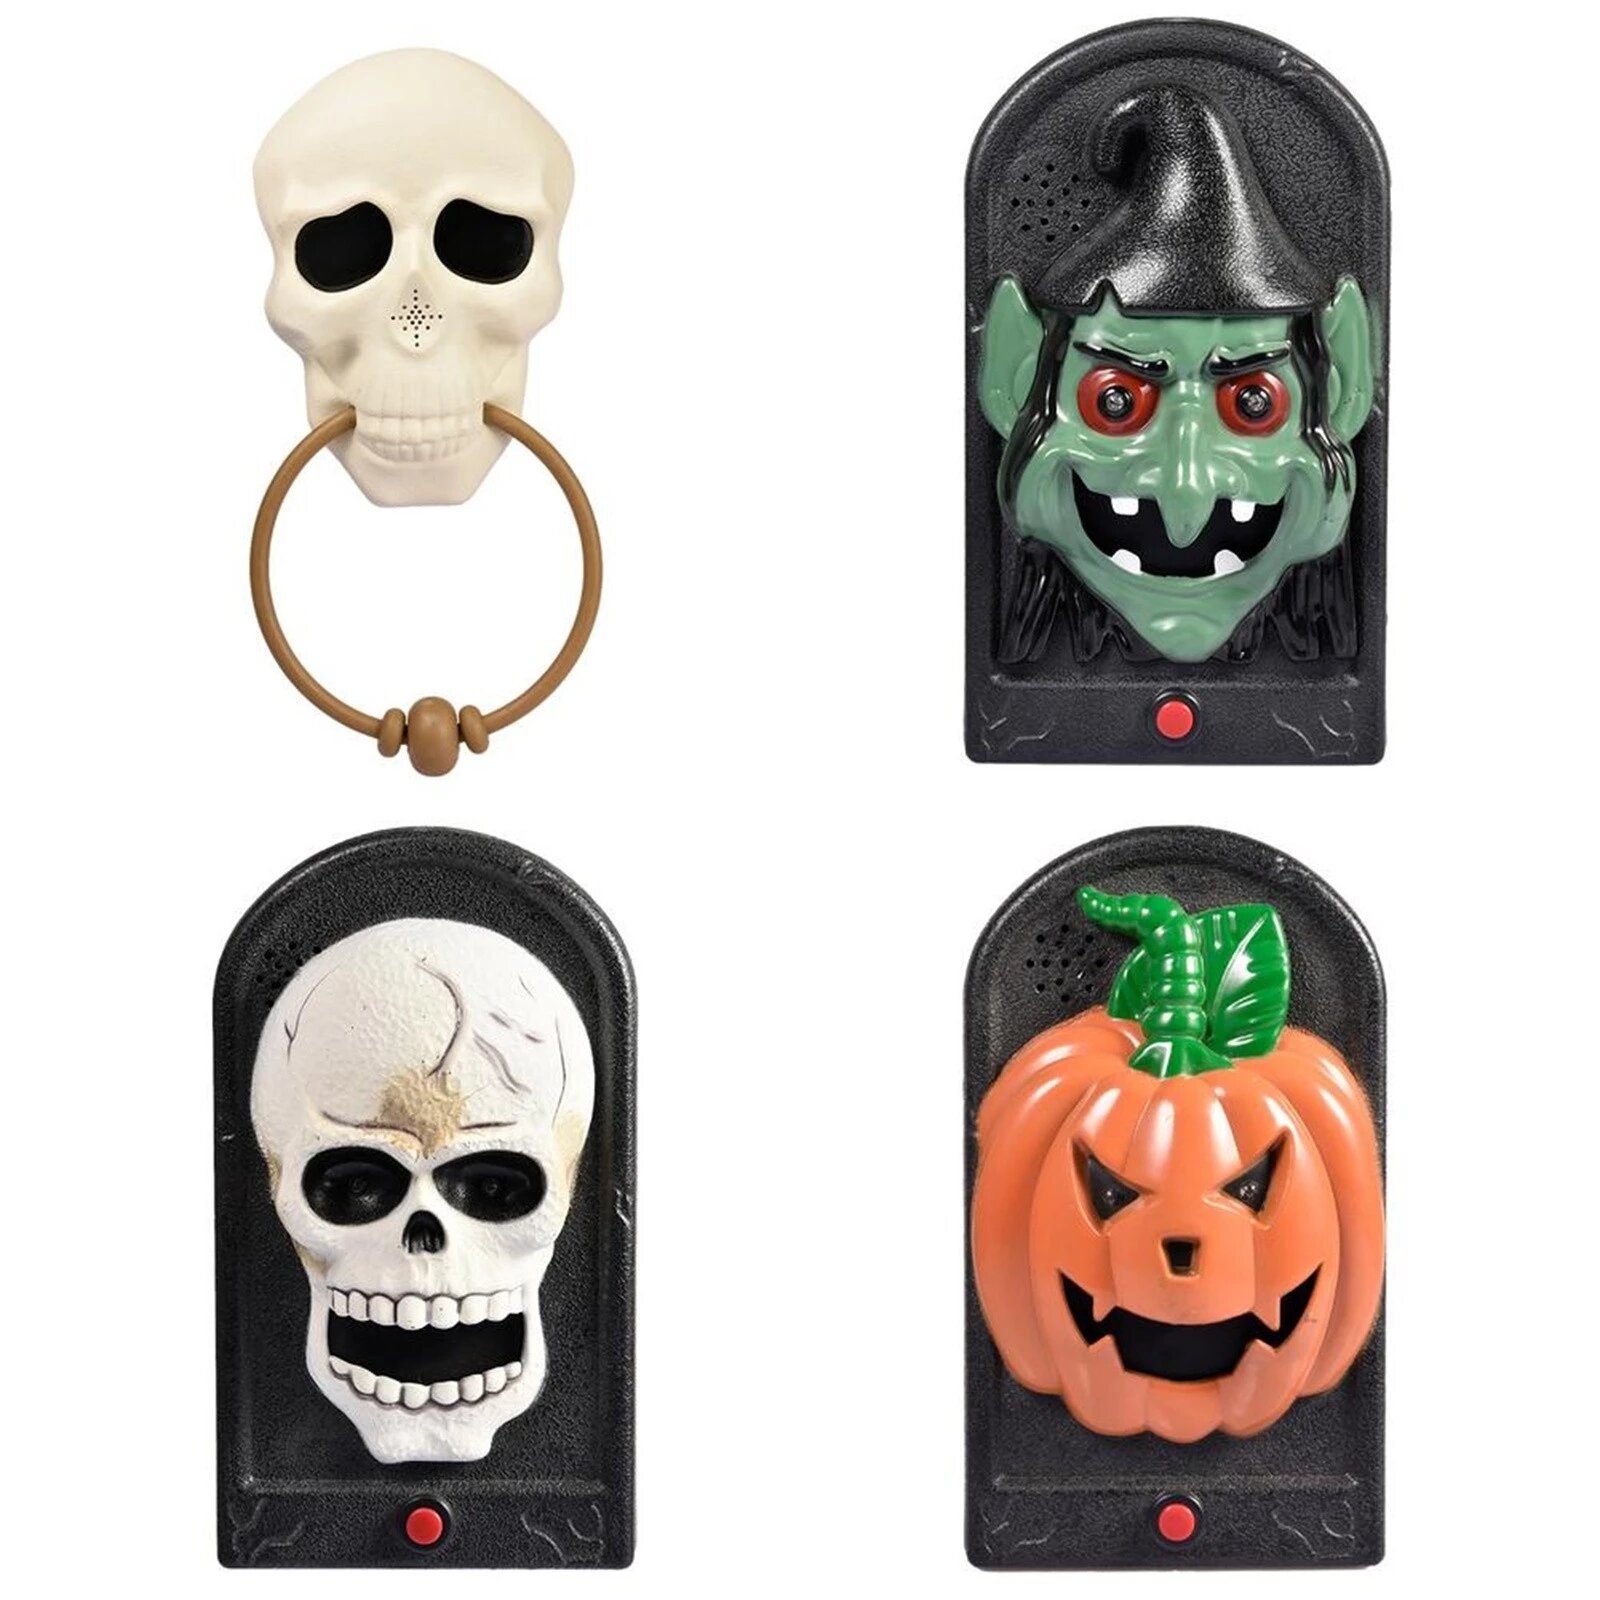 

Halloween Doorbell Glowing Sounding Horror Toy Welcome Door Hanging Skull Decora Horror Props Glowing Hanging Piece Bell